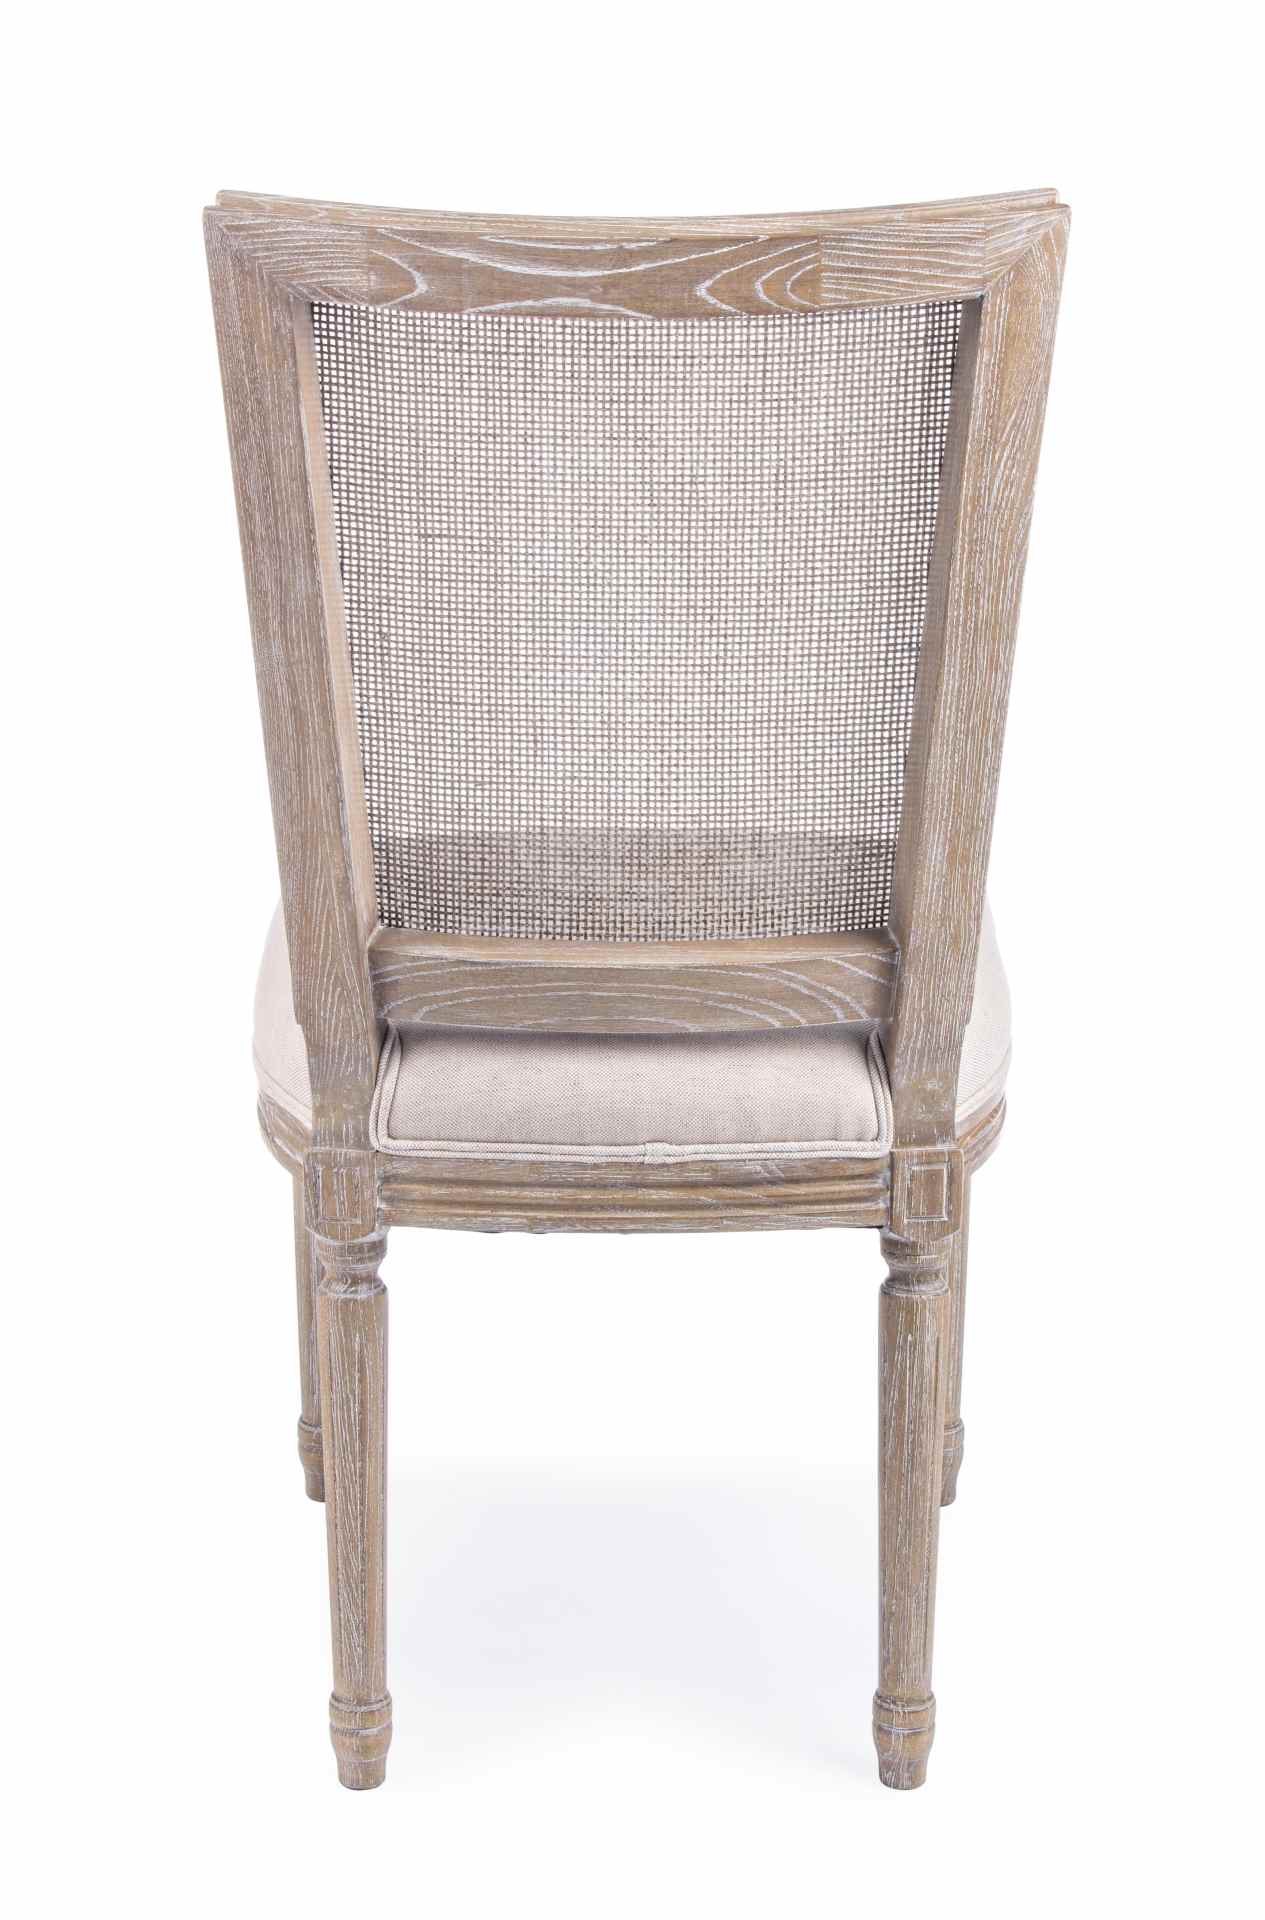 Der Esszimmerstuhl Liliane überzeugt mit seinem klassischen Design. Gefertigt wurde der Stuhl aus Eschenholz, welches einen natürlichen Farbton besitzt. Die Sitzfläche ist aus einem Mix aus Baumwolle und Leinen gefertigt, welche einen Beigen Farbton besit